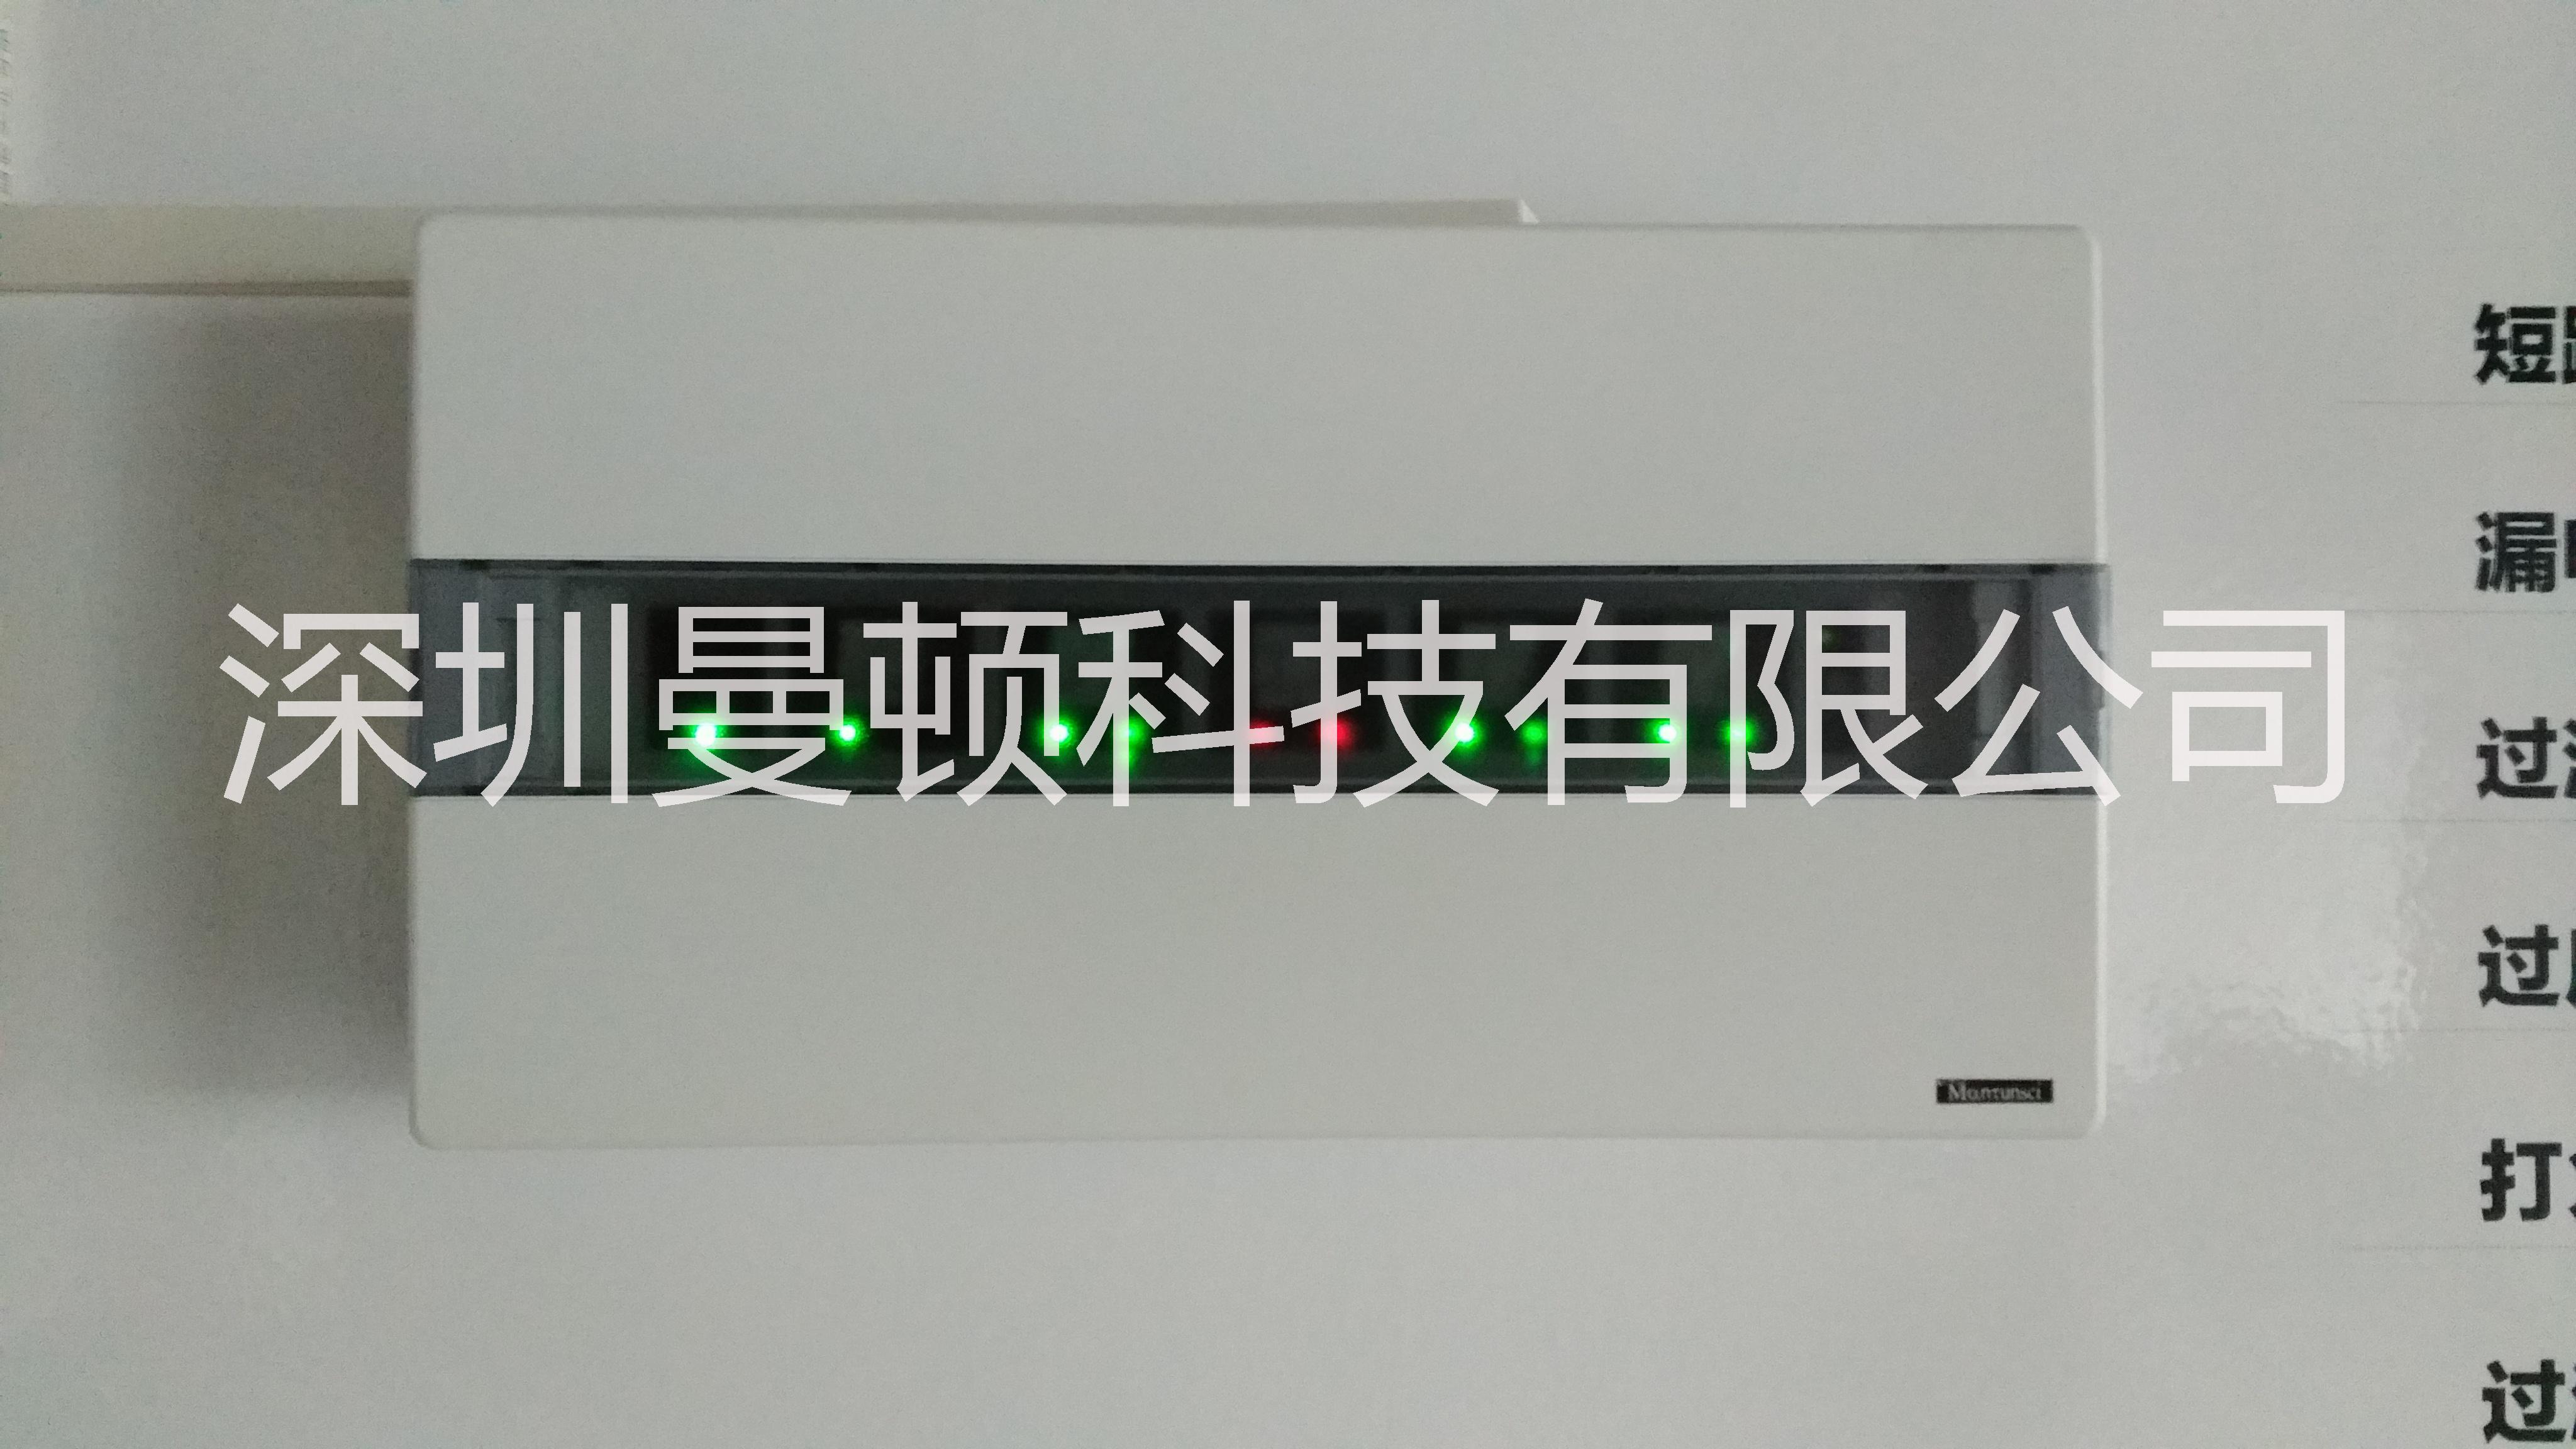 深圳市mantunsci 智能断路器厂家mantunsci 智能断路器诚邀合作伙伴